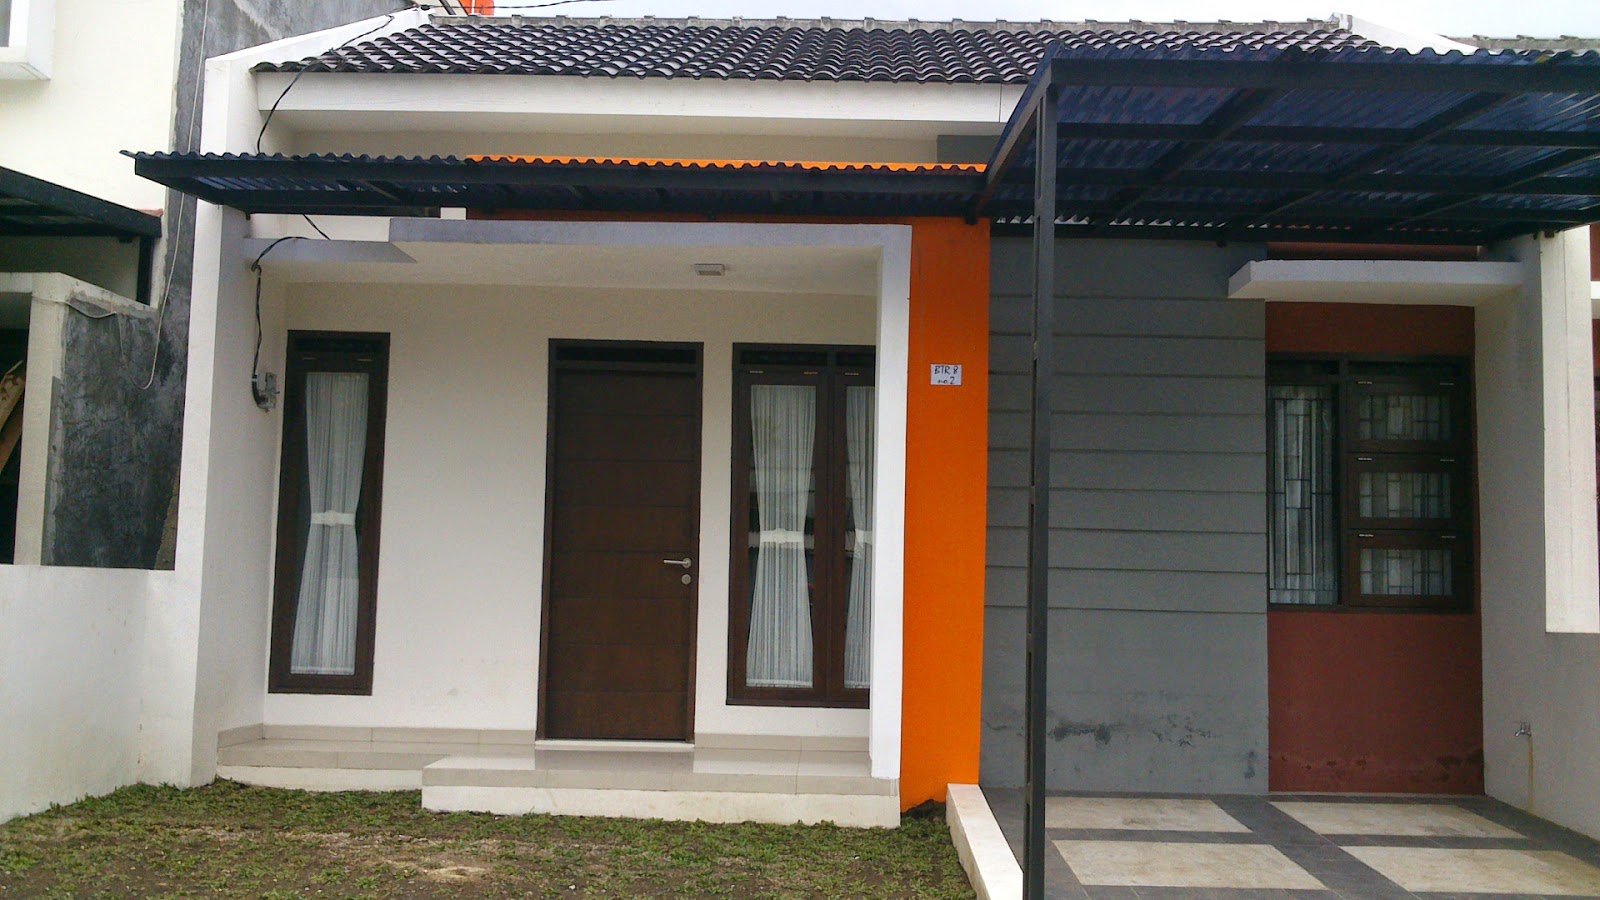  Kontrakan  Rumah  di Bandung  Timur cari kost